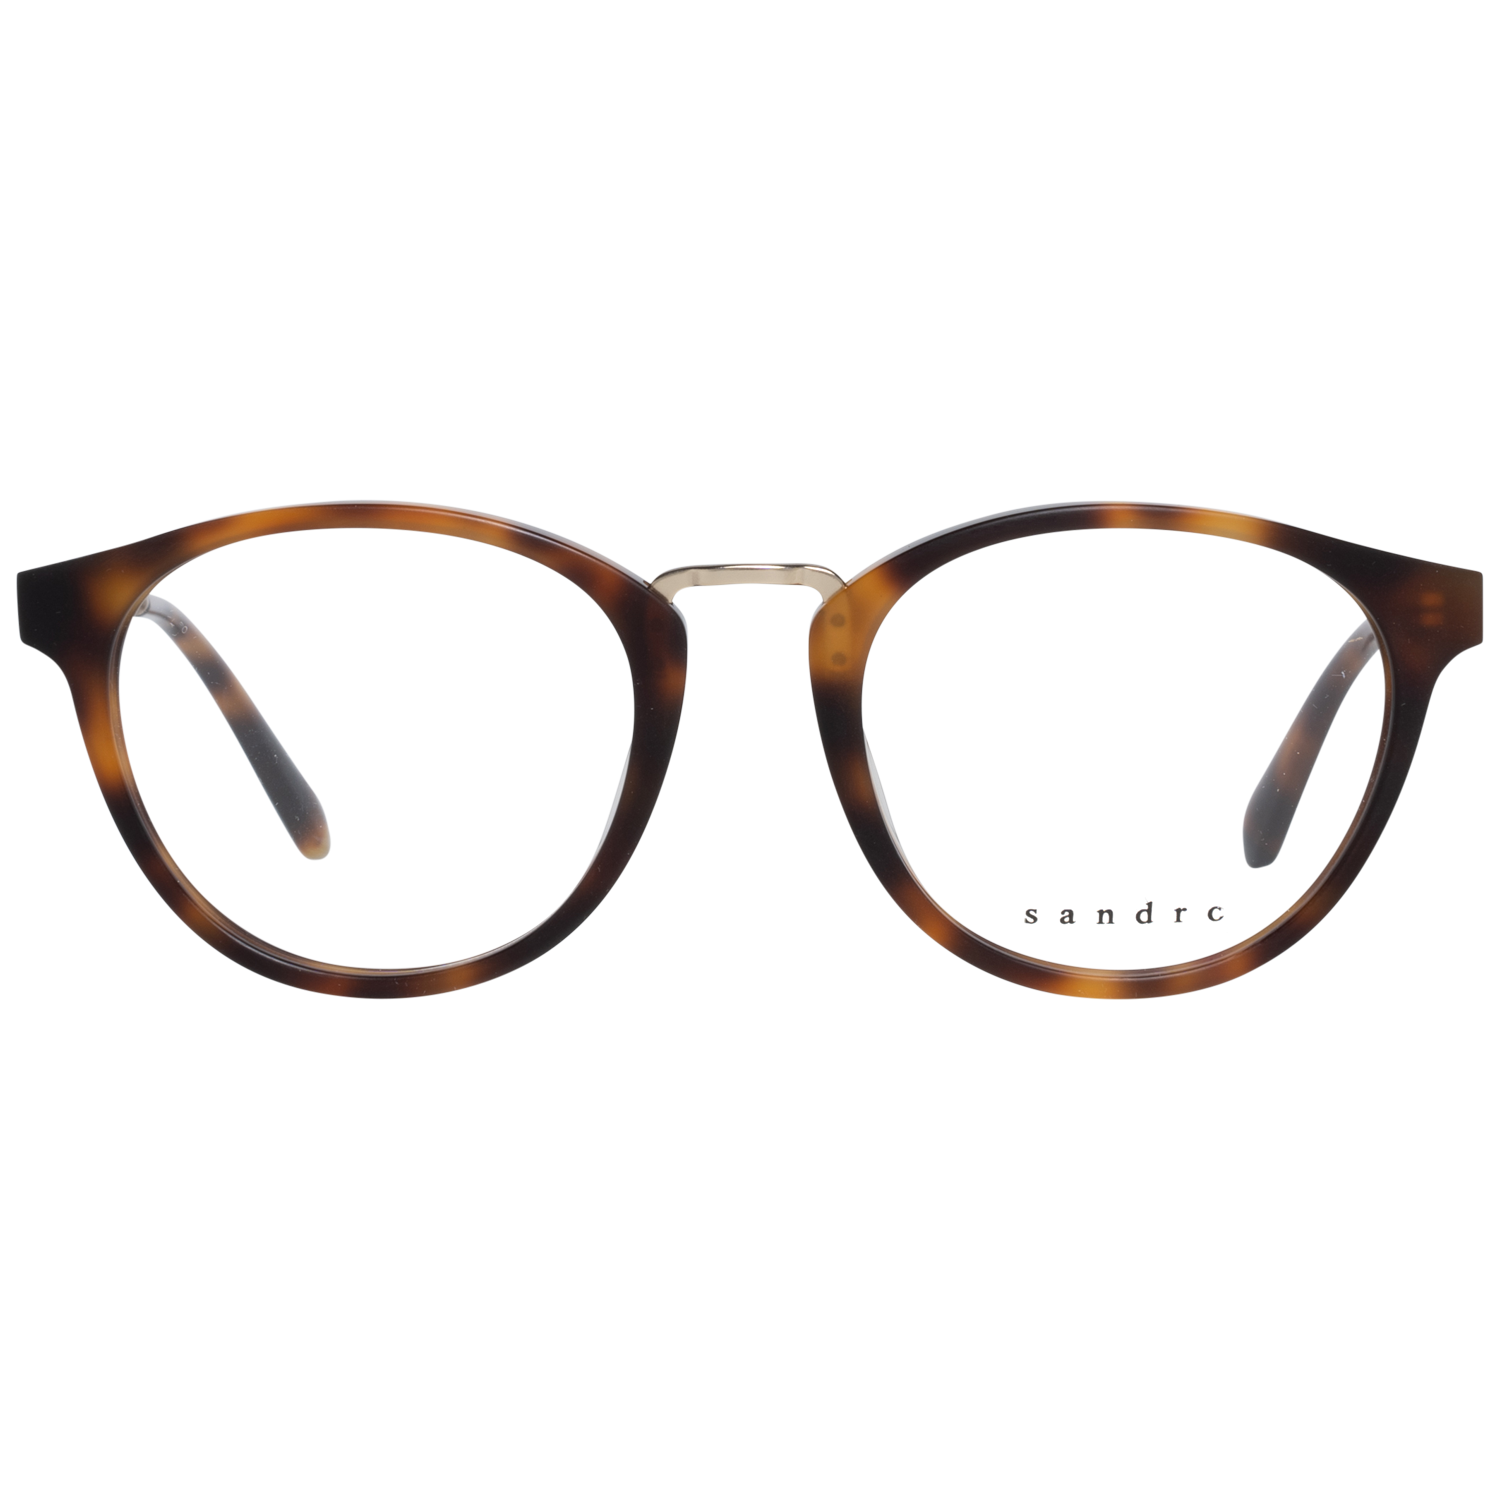 Sandro Frames Sandro Optical Frame SD1006 201 49 Eyeglasses Eyewear UK USA Australia 